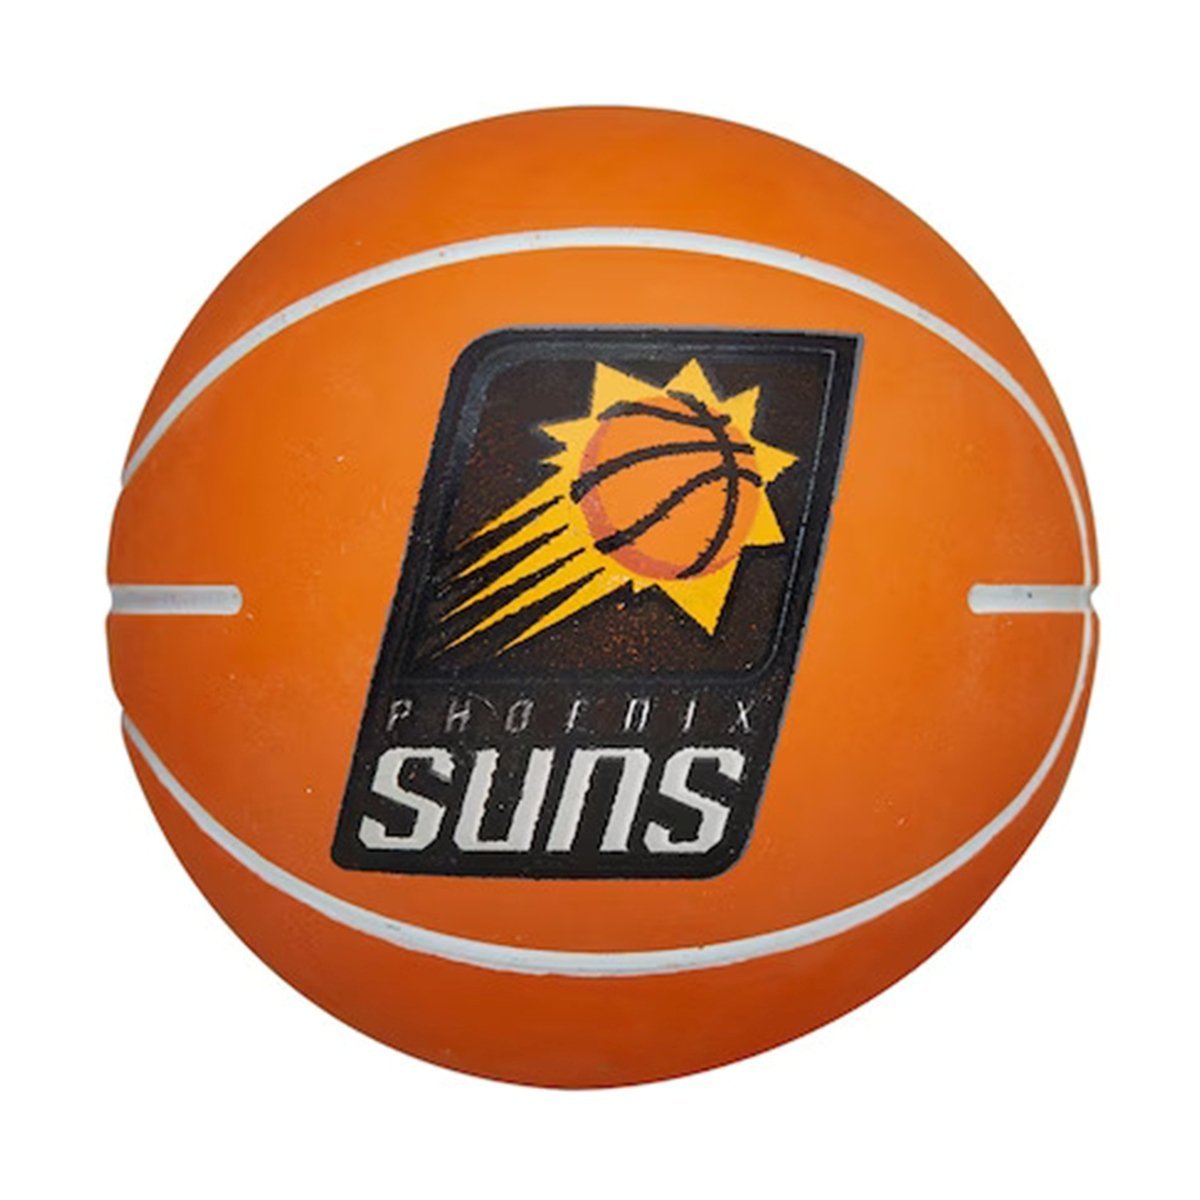 Lopta Wilson NBA Dribbler Bskt Pho Suns - oranžová